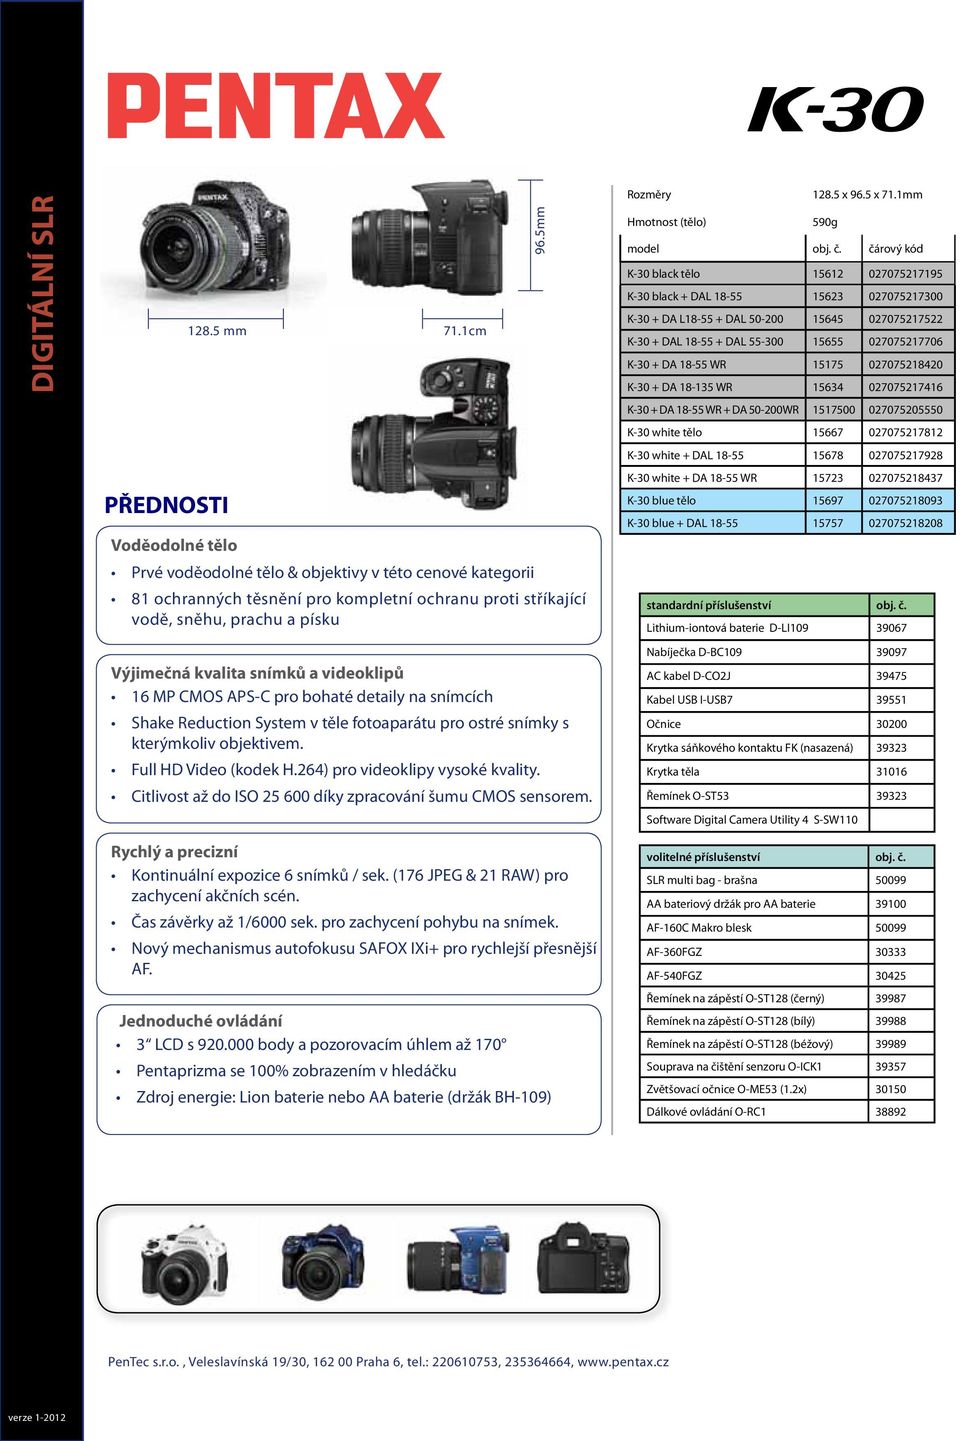 videoklipů 16 MP CMOS APS-C pro bohaté detaily na snímcích Shake Reduction System v těle fotoaparátu pro ostré snímky s kterýmkoliv objektivem. Full HD Video (kodek H.